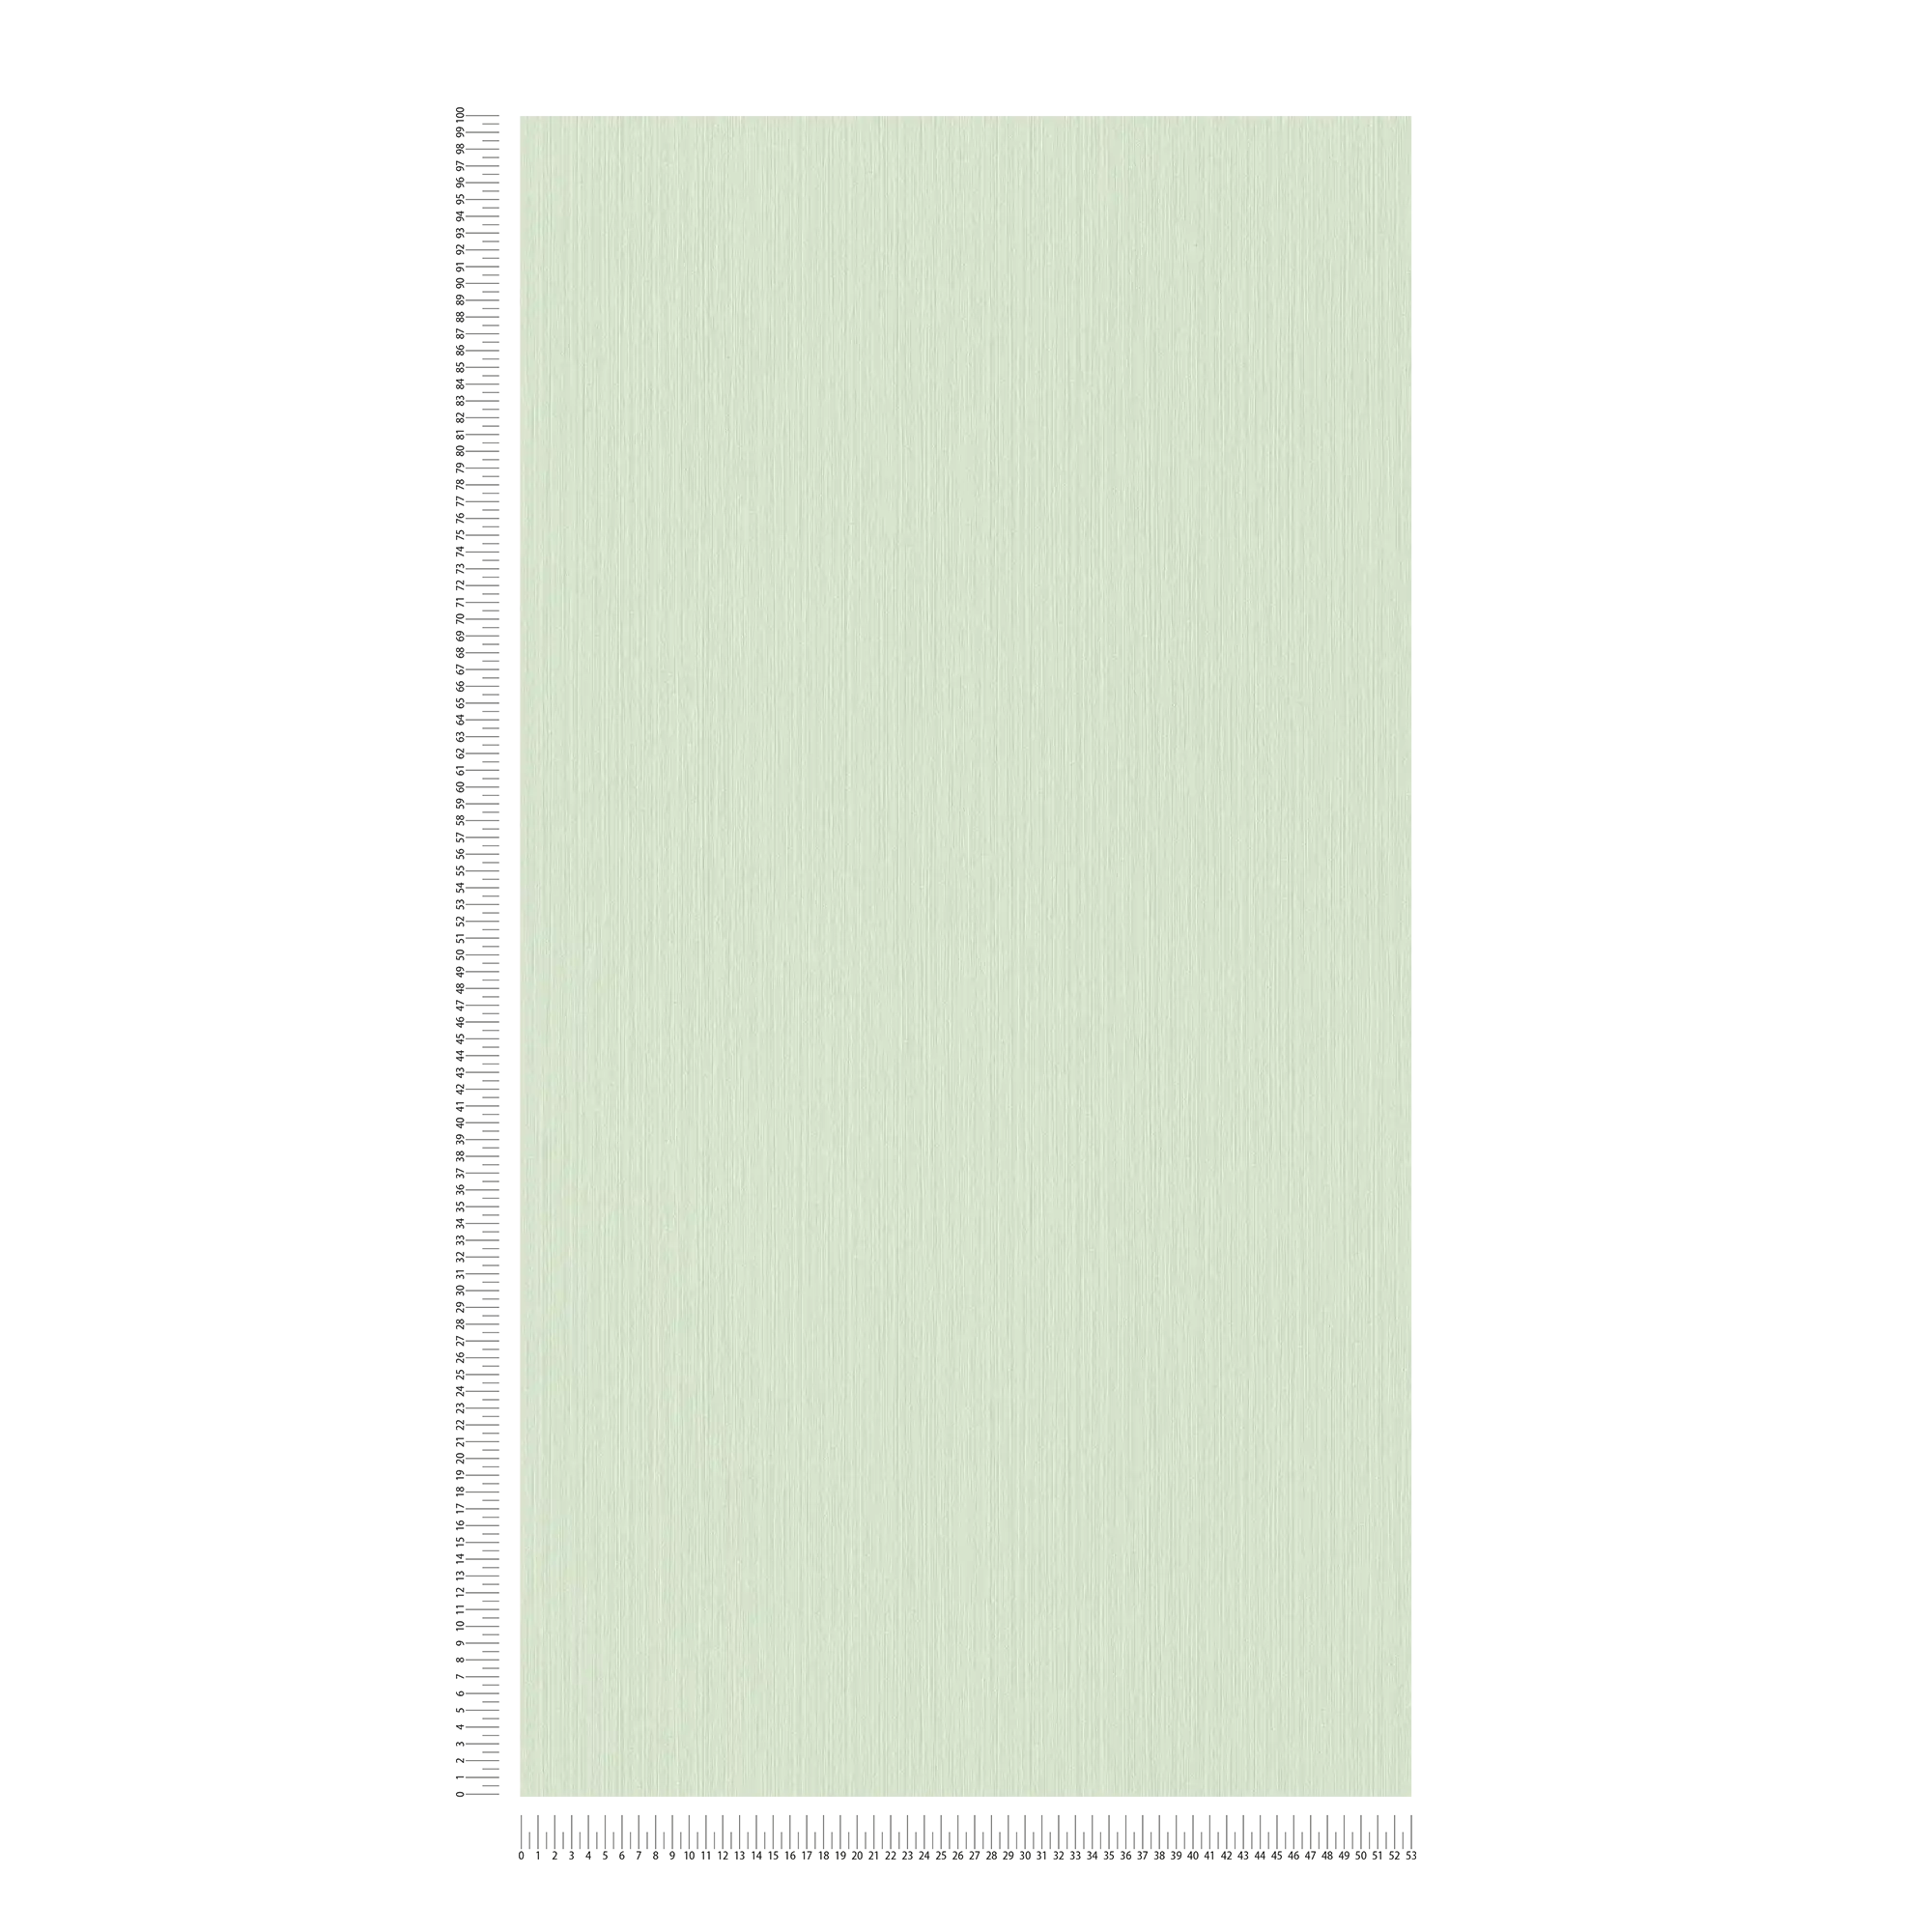             Carta da parati liscia verde chiaro con effetto tessile screziato di MICHALSKY
        